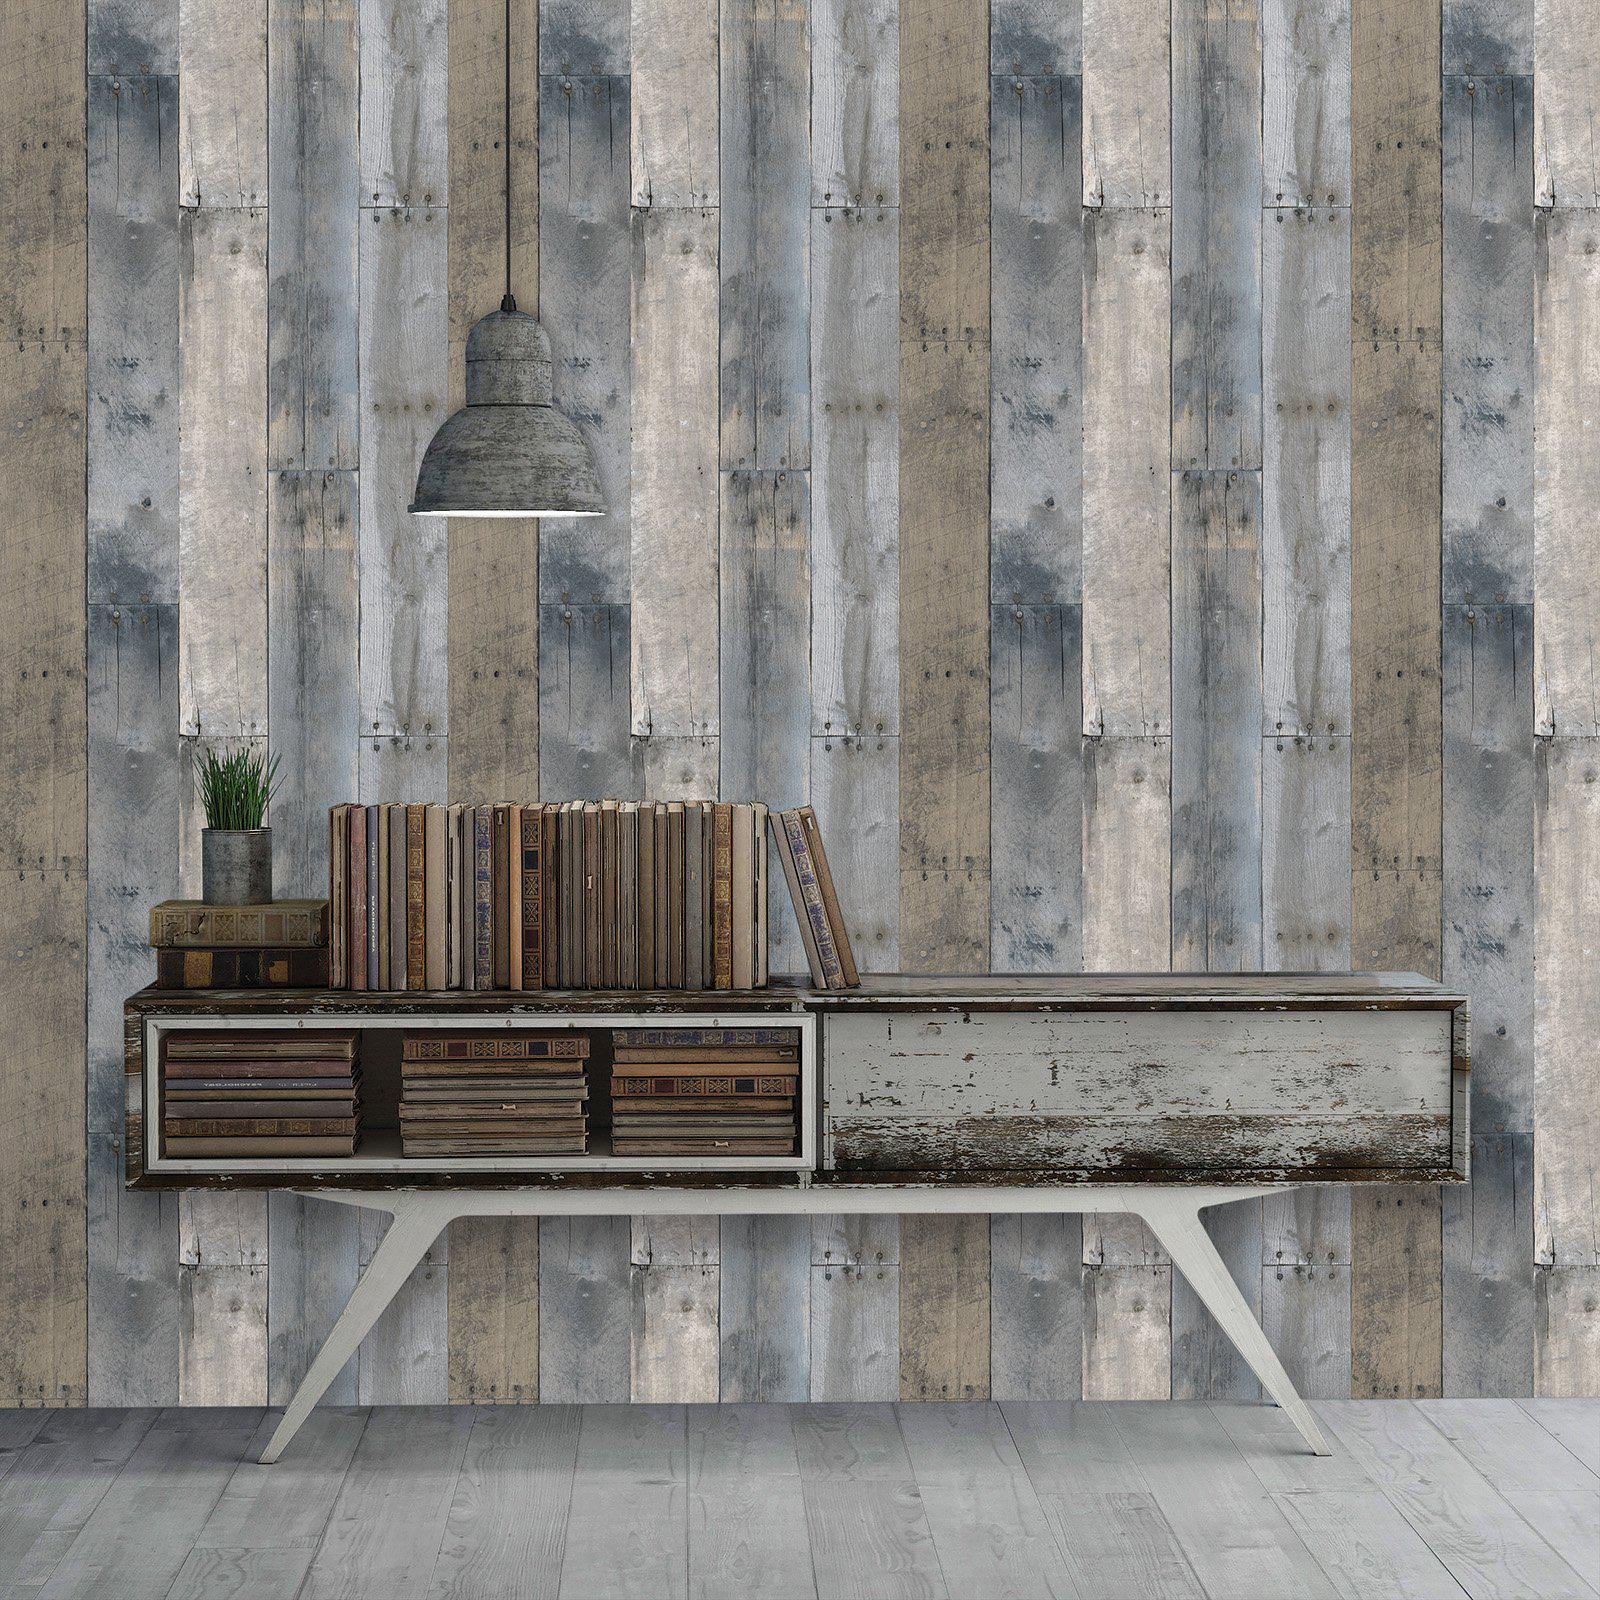 Tempaper Designs LIFESTYLE - Repurposed Wood Multi-Color Peel and Stick Wallpaper